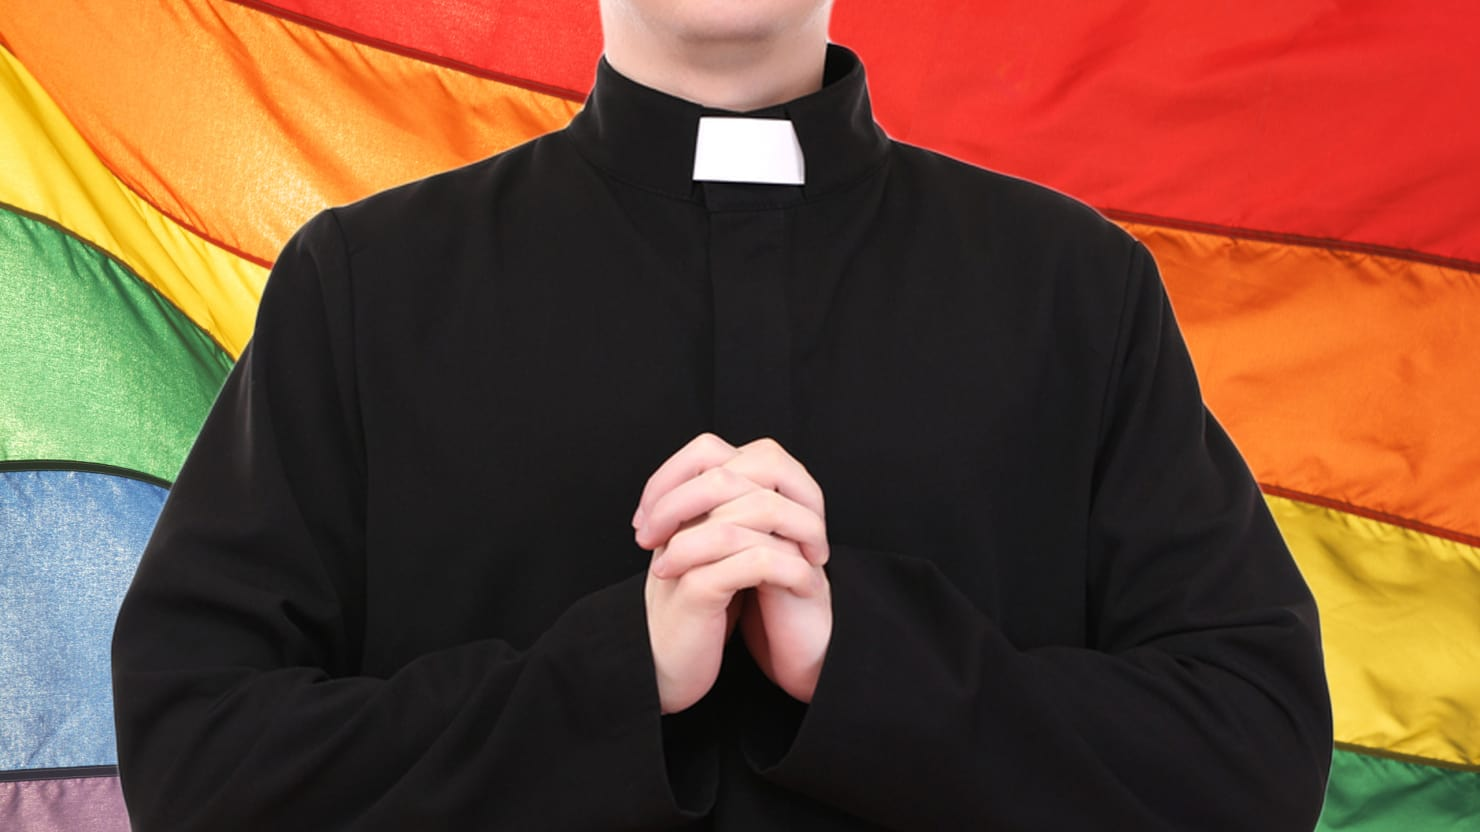 Nov škandal pretresa center katolištva: Obtožbe proti 40 gejevskim duhovnikom v Italiji posredovane Vatikanu